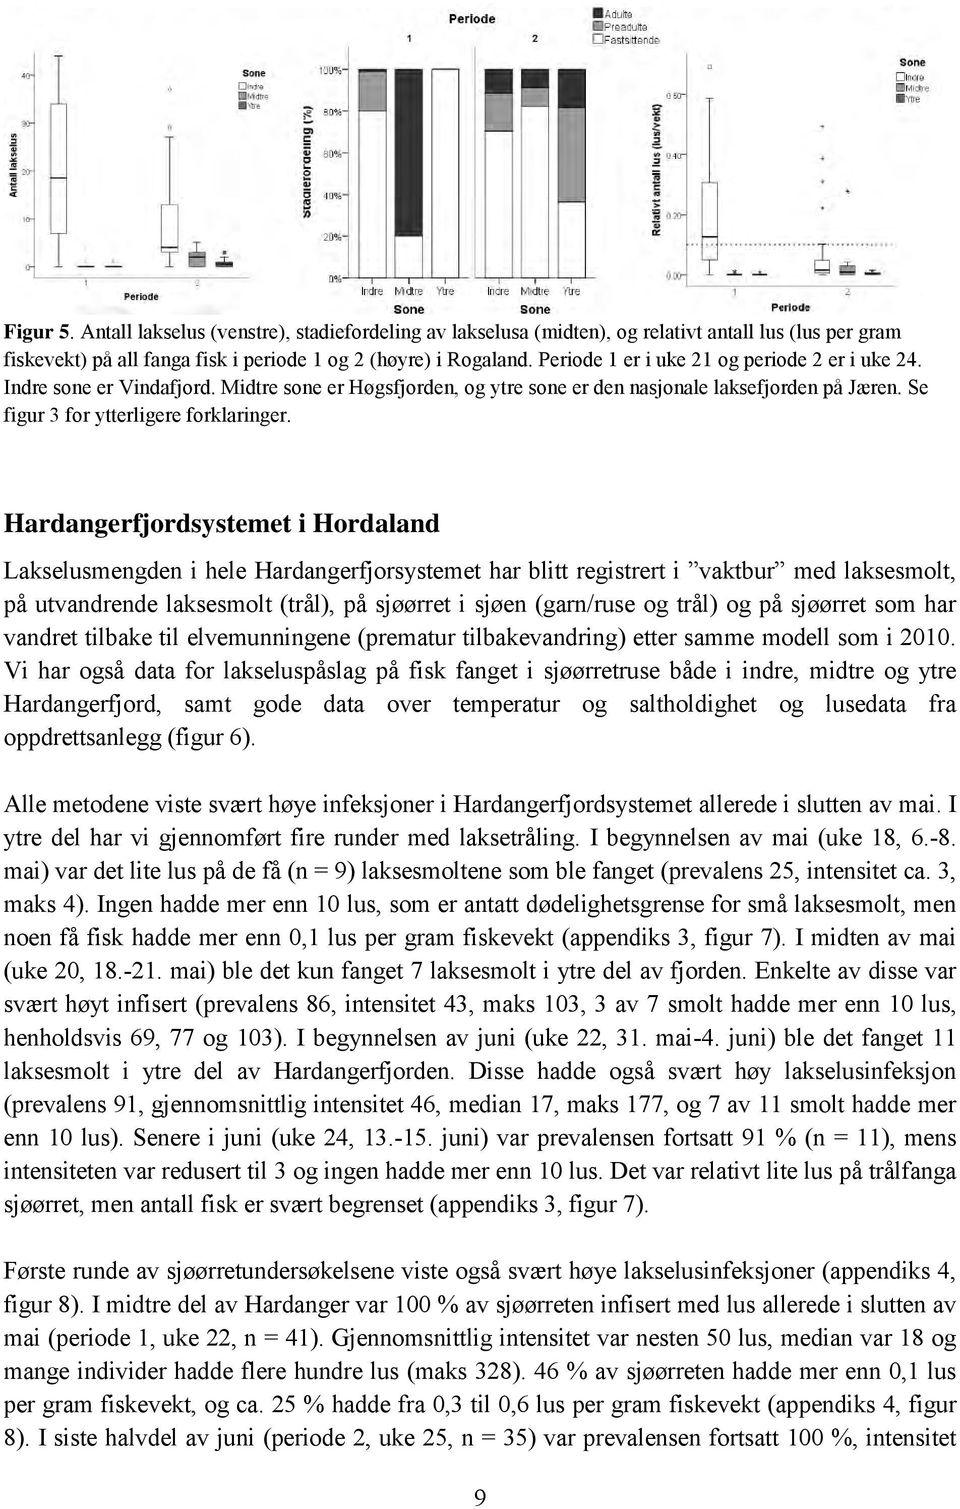 Hardangerfjordsystemet i Hordaland Lakselusmengden i hele Hardangerfjorsystemet har blitt registrert i vaktbur med laksesmolt, på utvandrende laksesmolt (trål), på sjøørret i sjøen (garn/ruse og